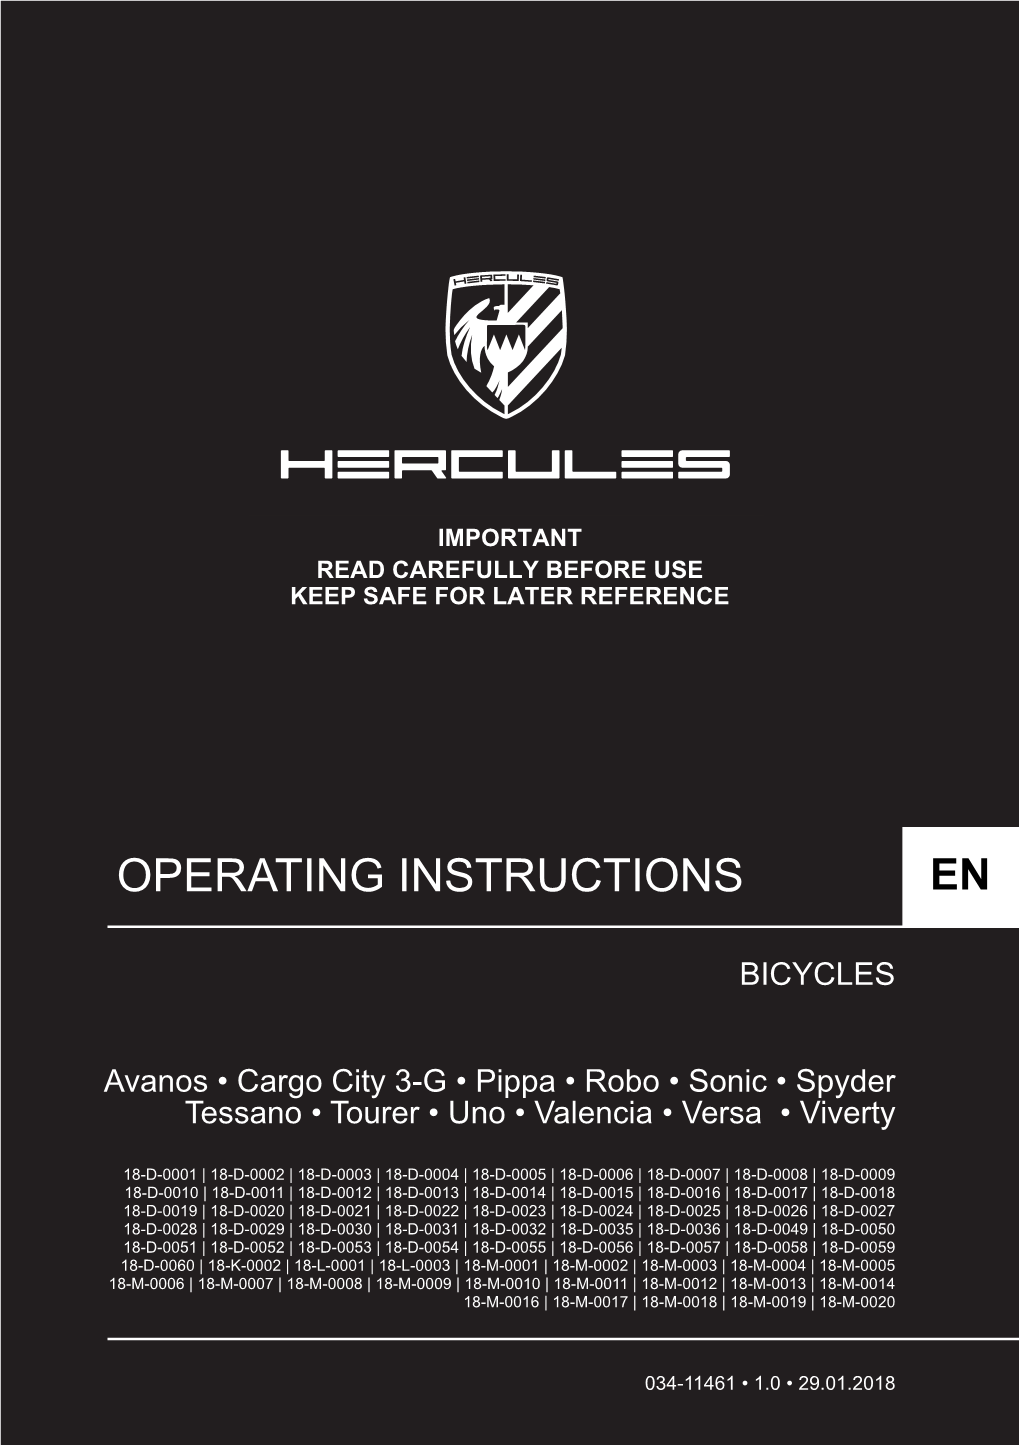 HERCULES Bicycles 2018